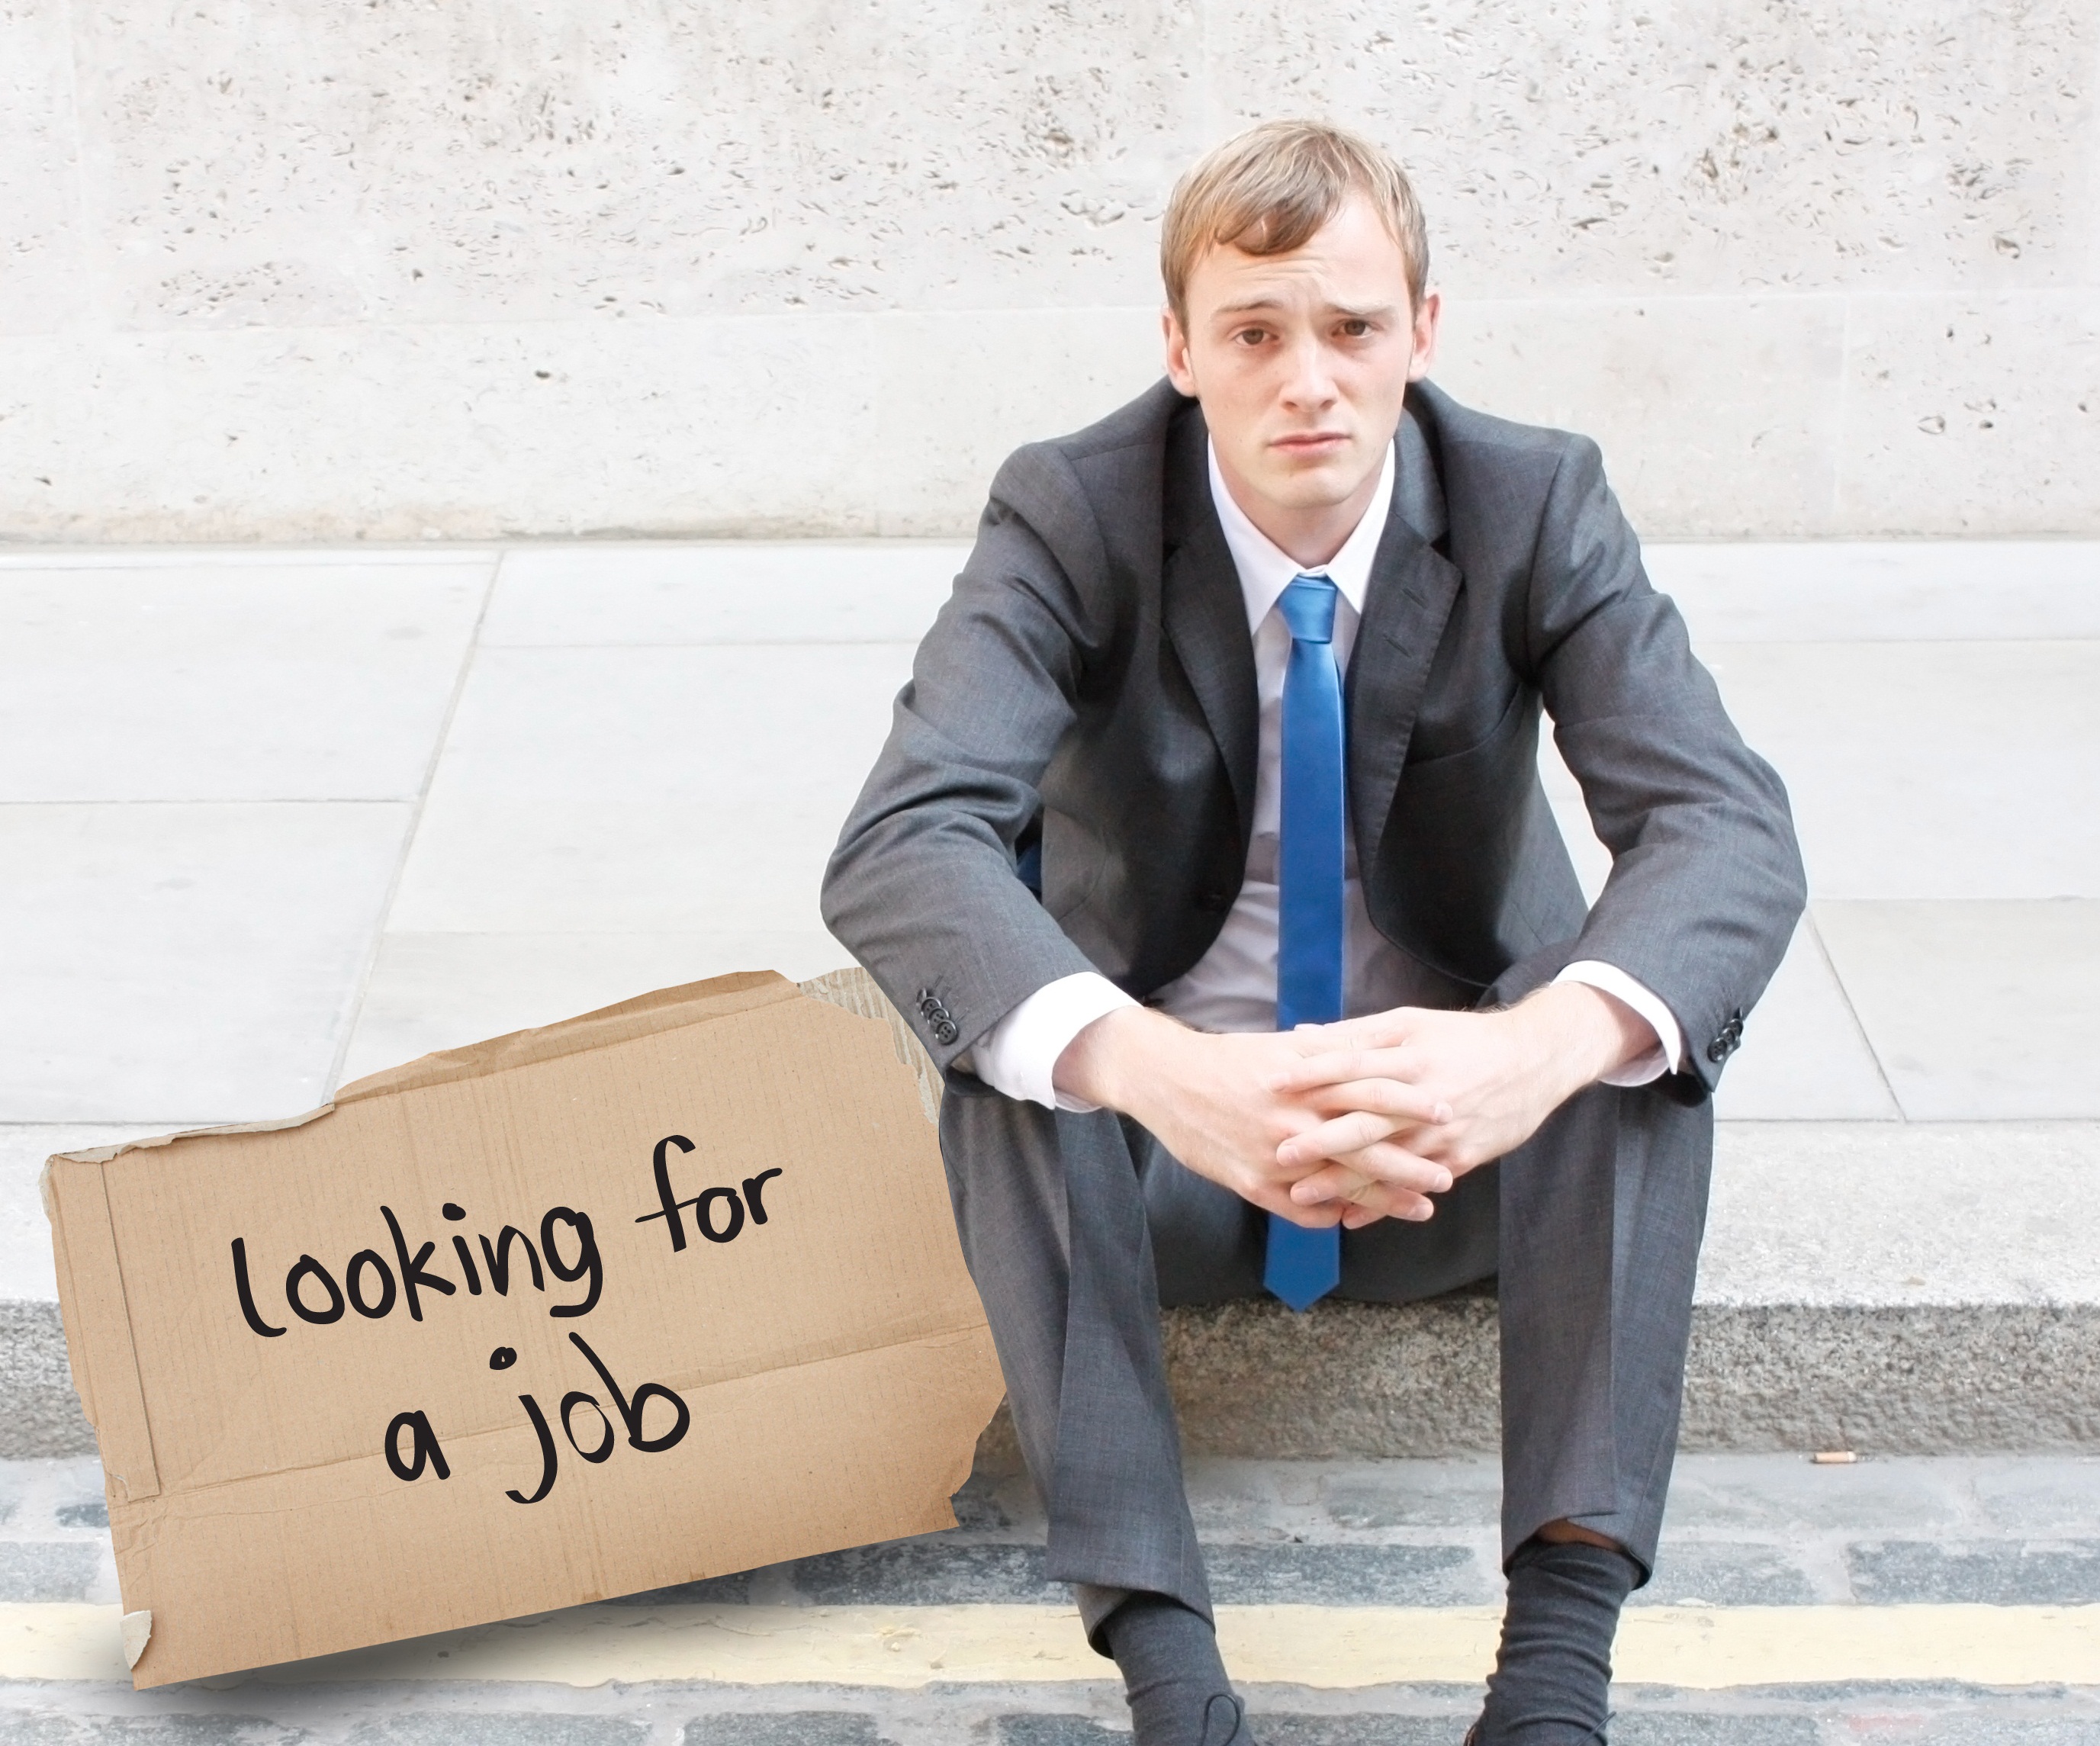 Люди помогите найти работу. Безработица. Безработный человек. Безработица картинки. Неработающий человек.